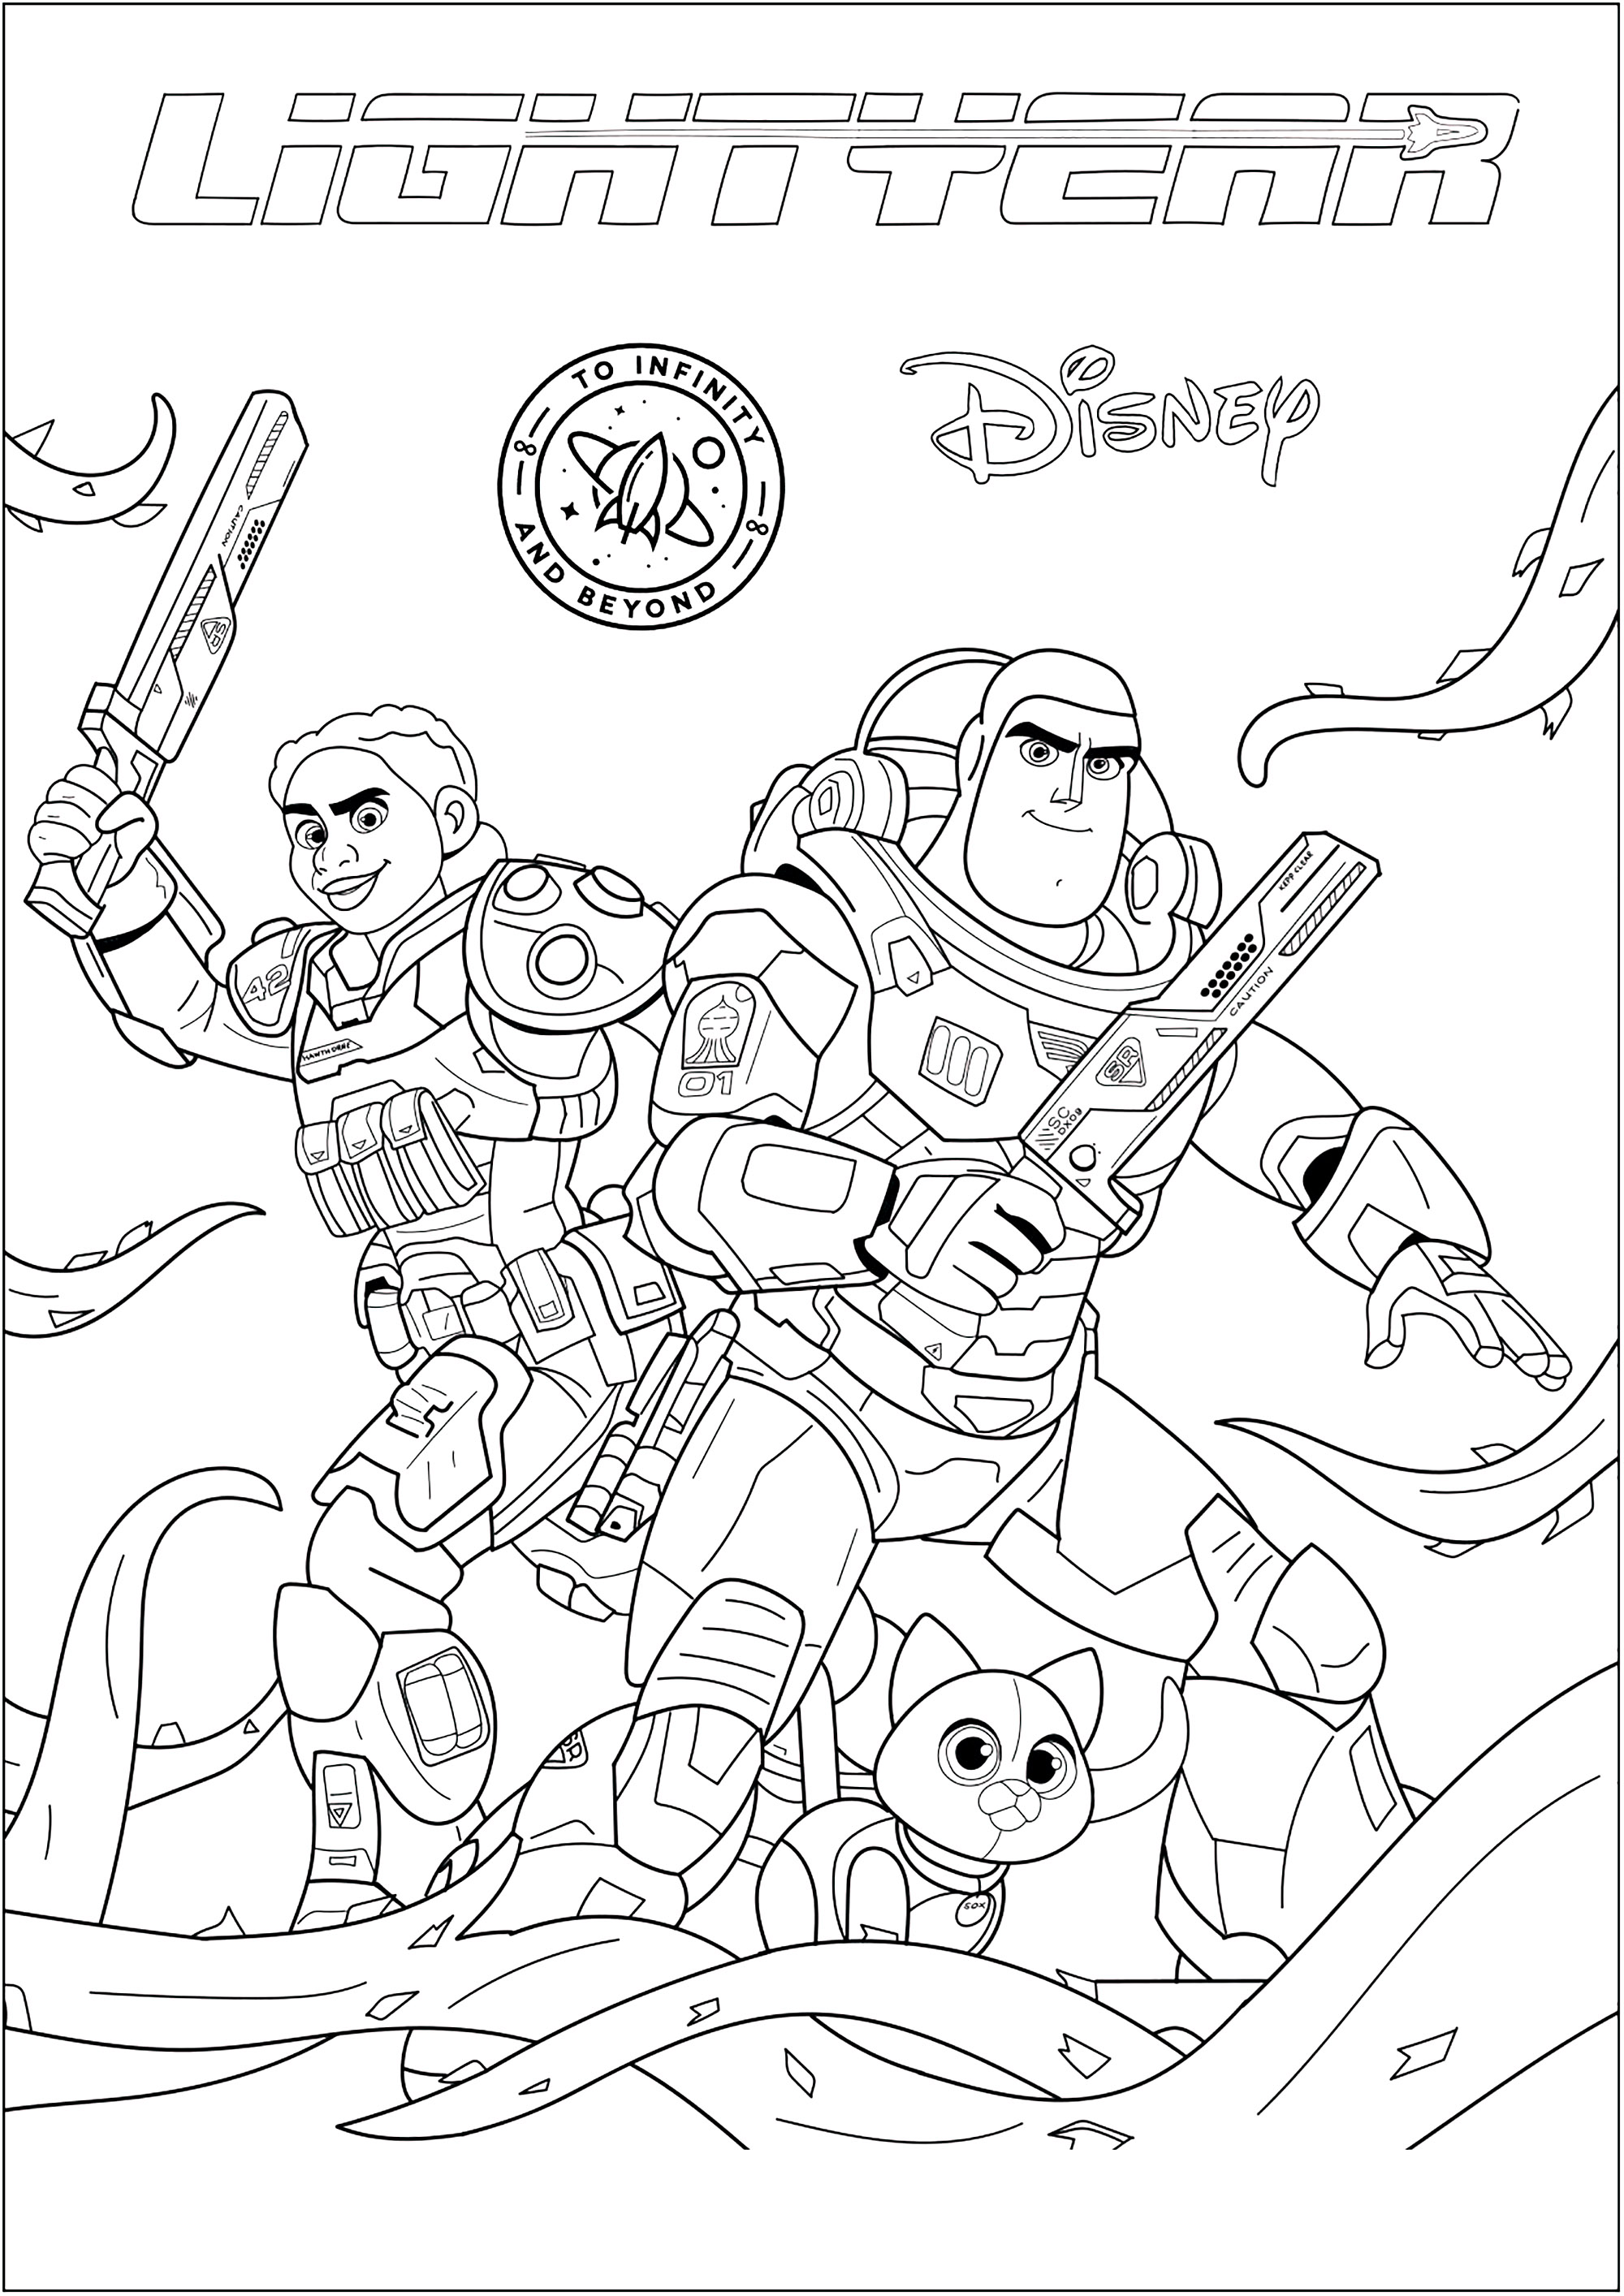 Coloriage avec tous les personnages de Buzz L'éclair, de Disney / Pixar